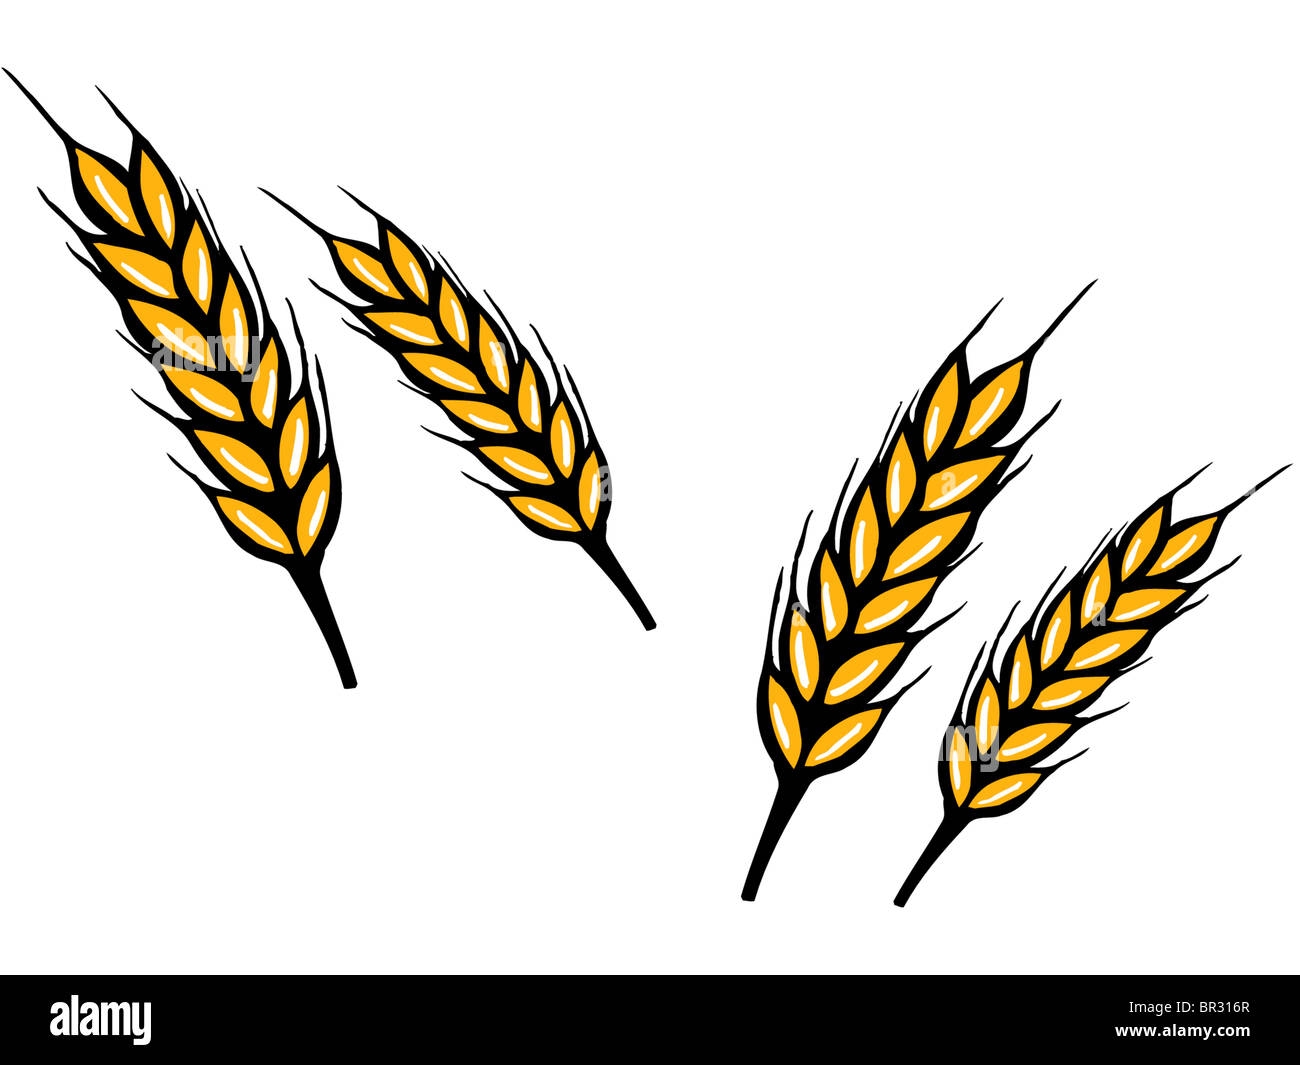 Трафарет колосок пшеницы для вырезания